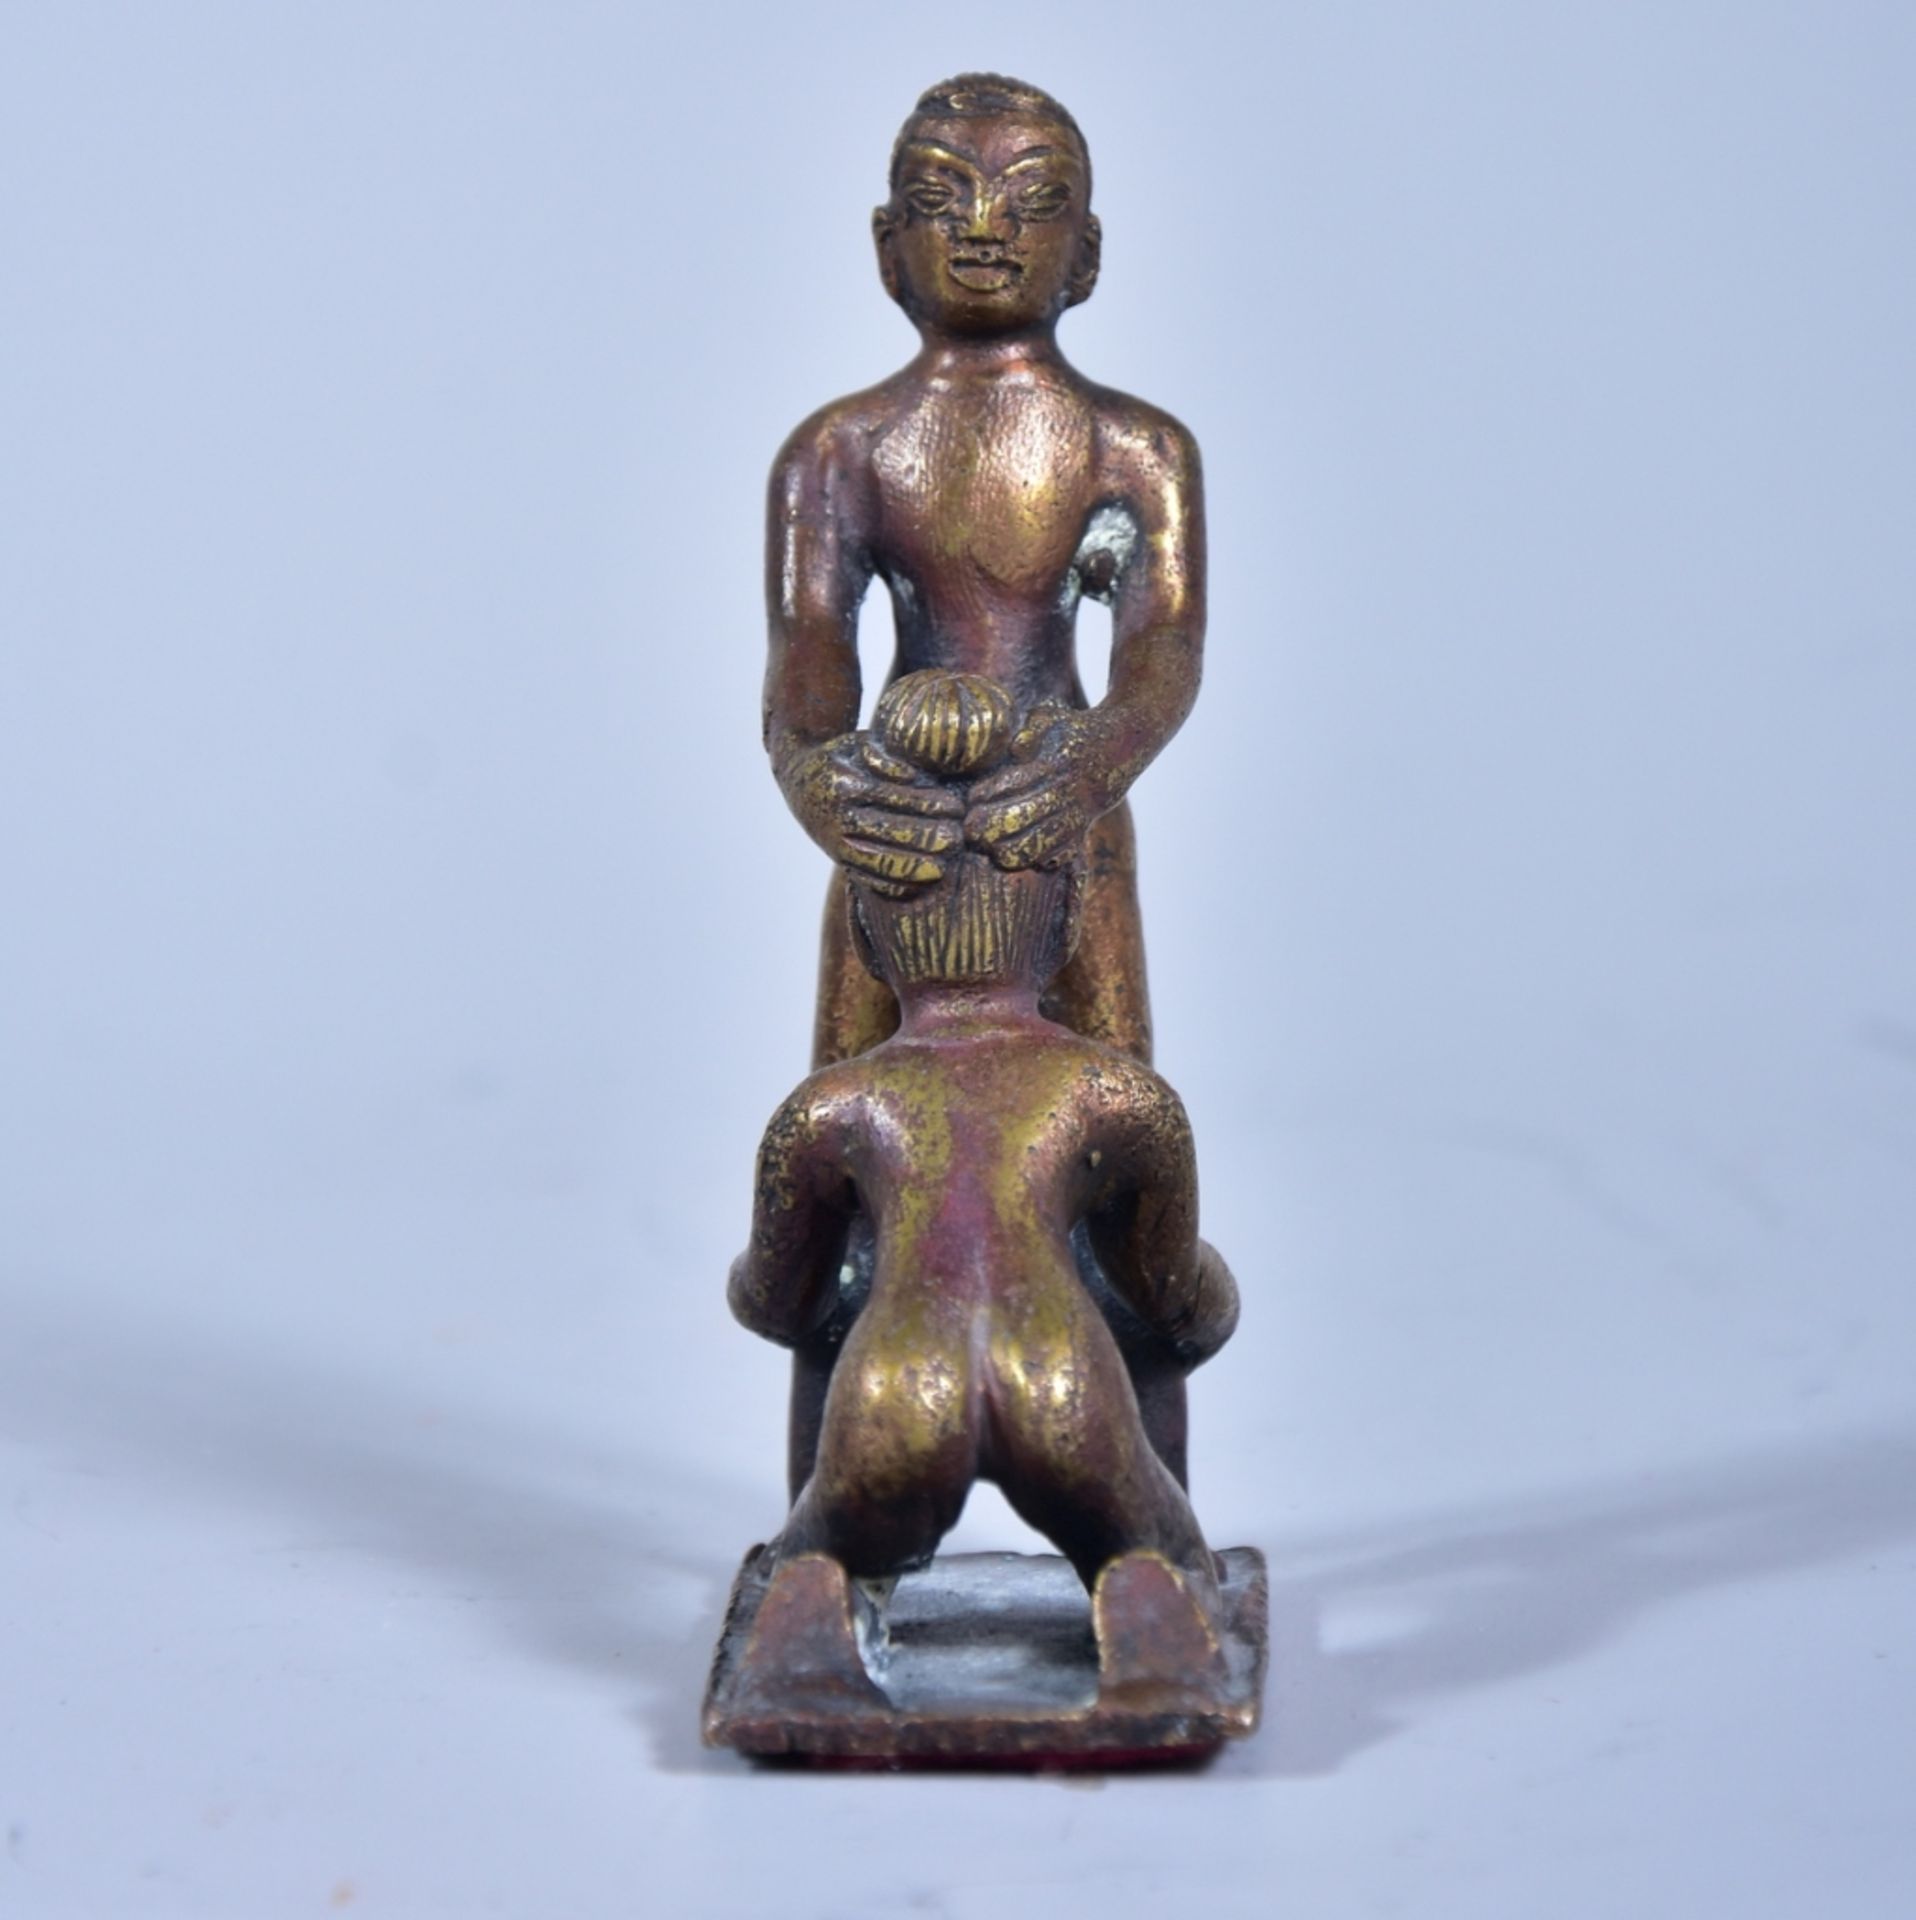 Erotische Bronzefigur, Bronzeguß, H.9cm- - -23.00 % buyer's premium on the hammer price19.00 % VAT